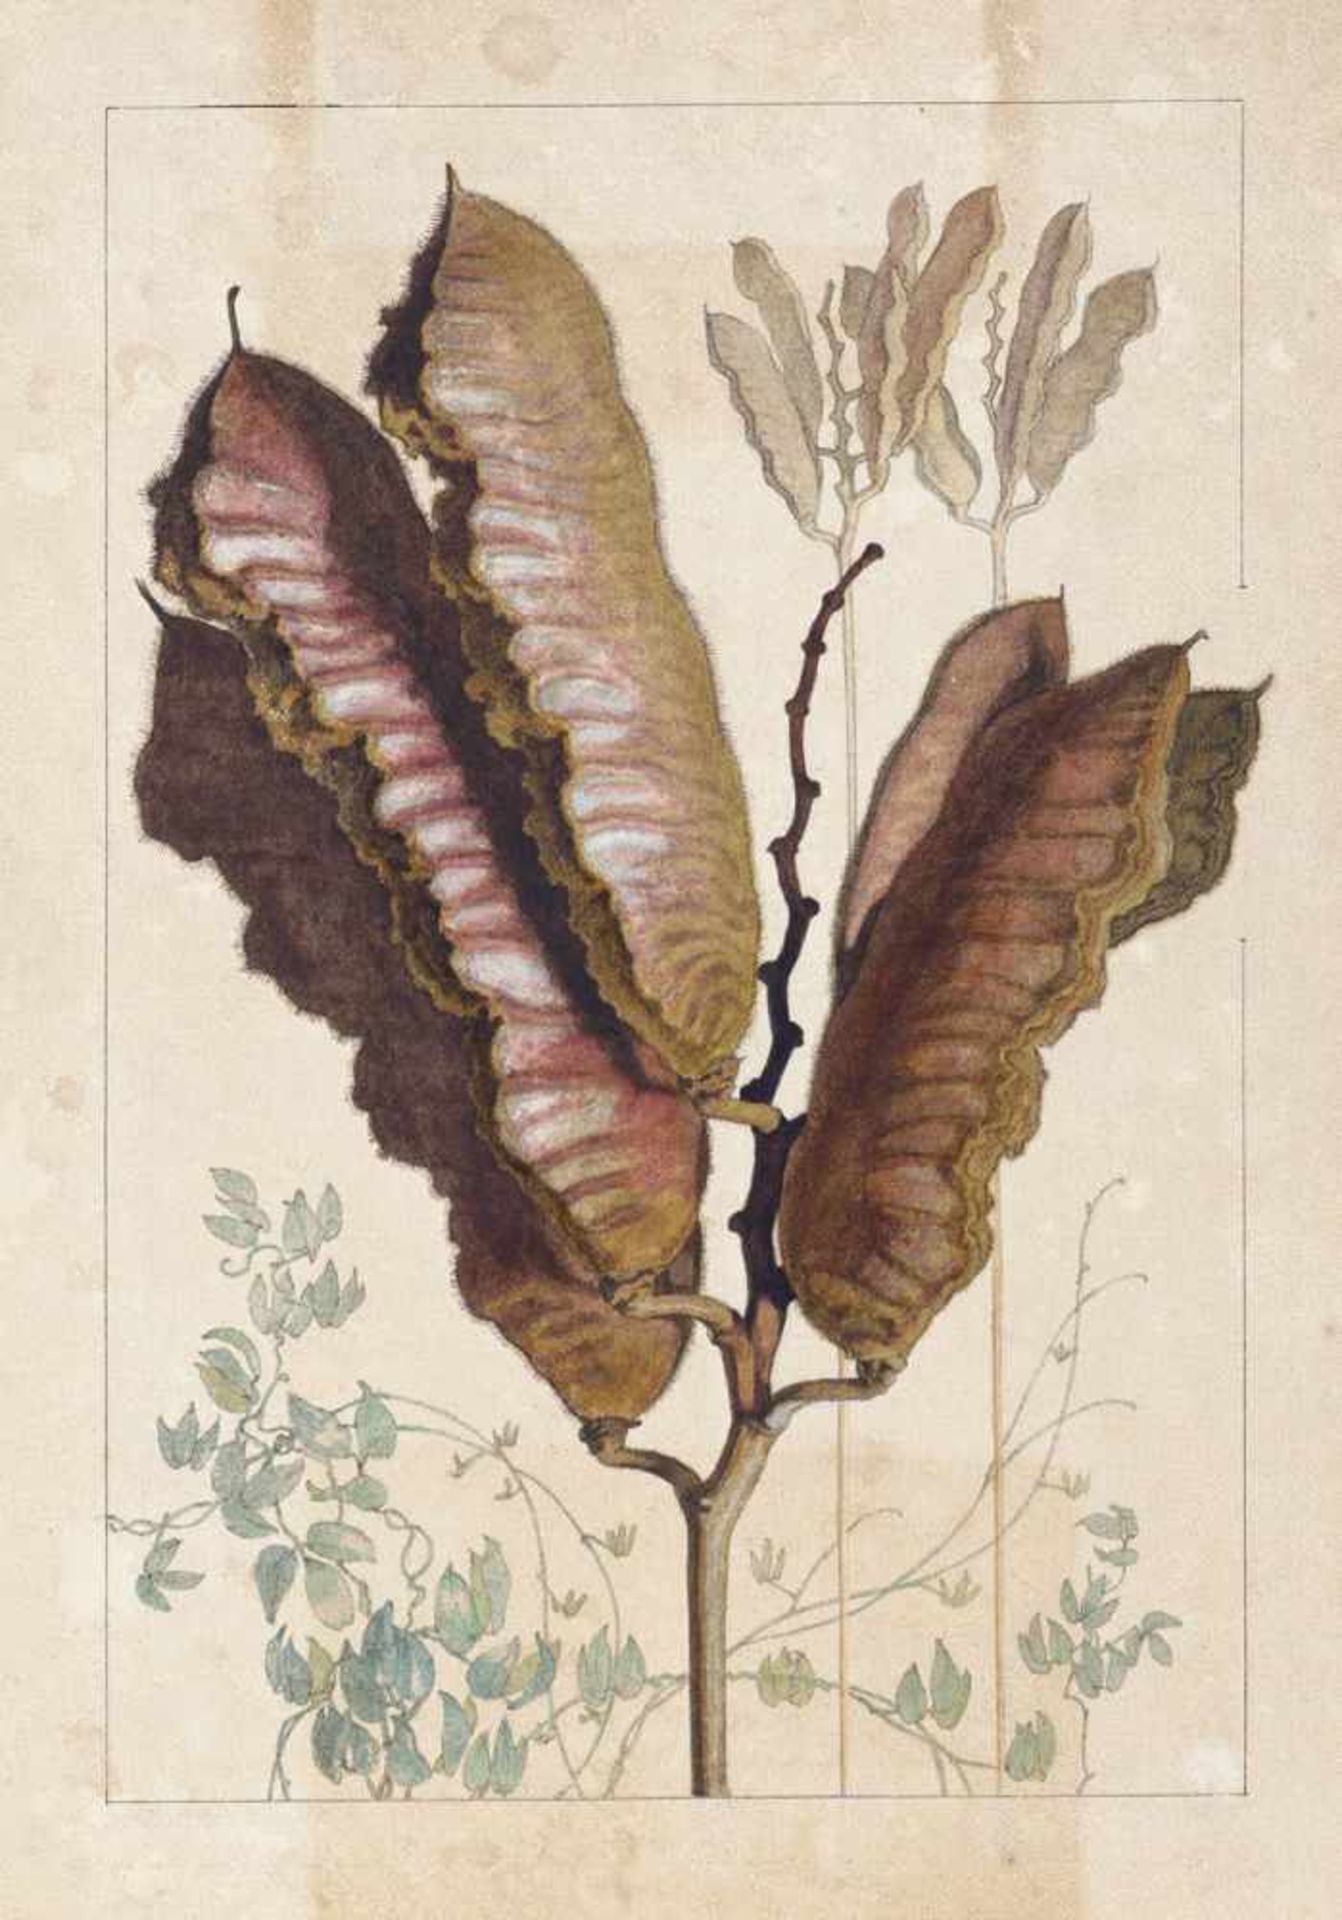 Deutsch: um 1860. Zwei botanische Studien der südamerikanischen Urwaldfrucht Mucuna urensum 1860.